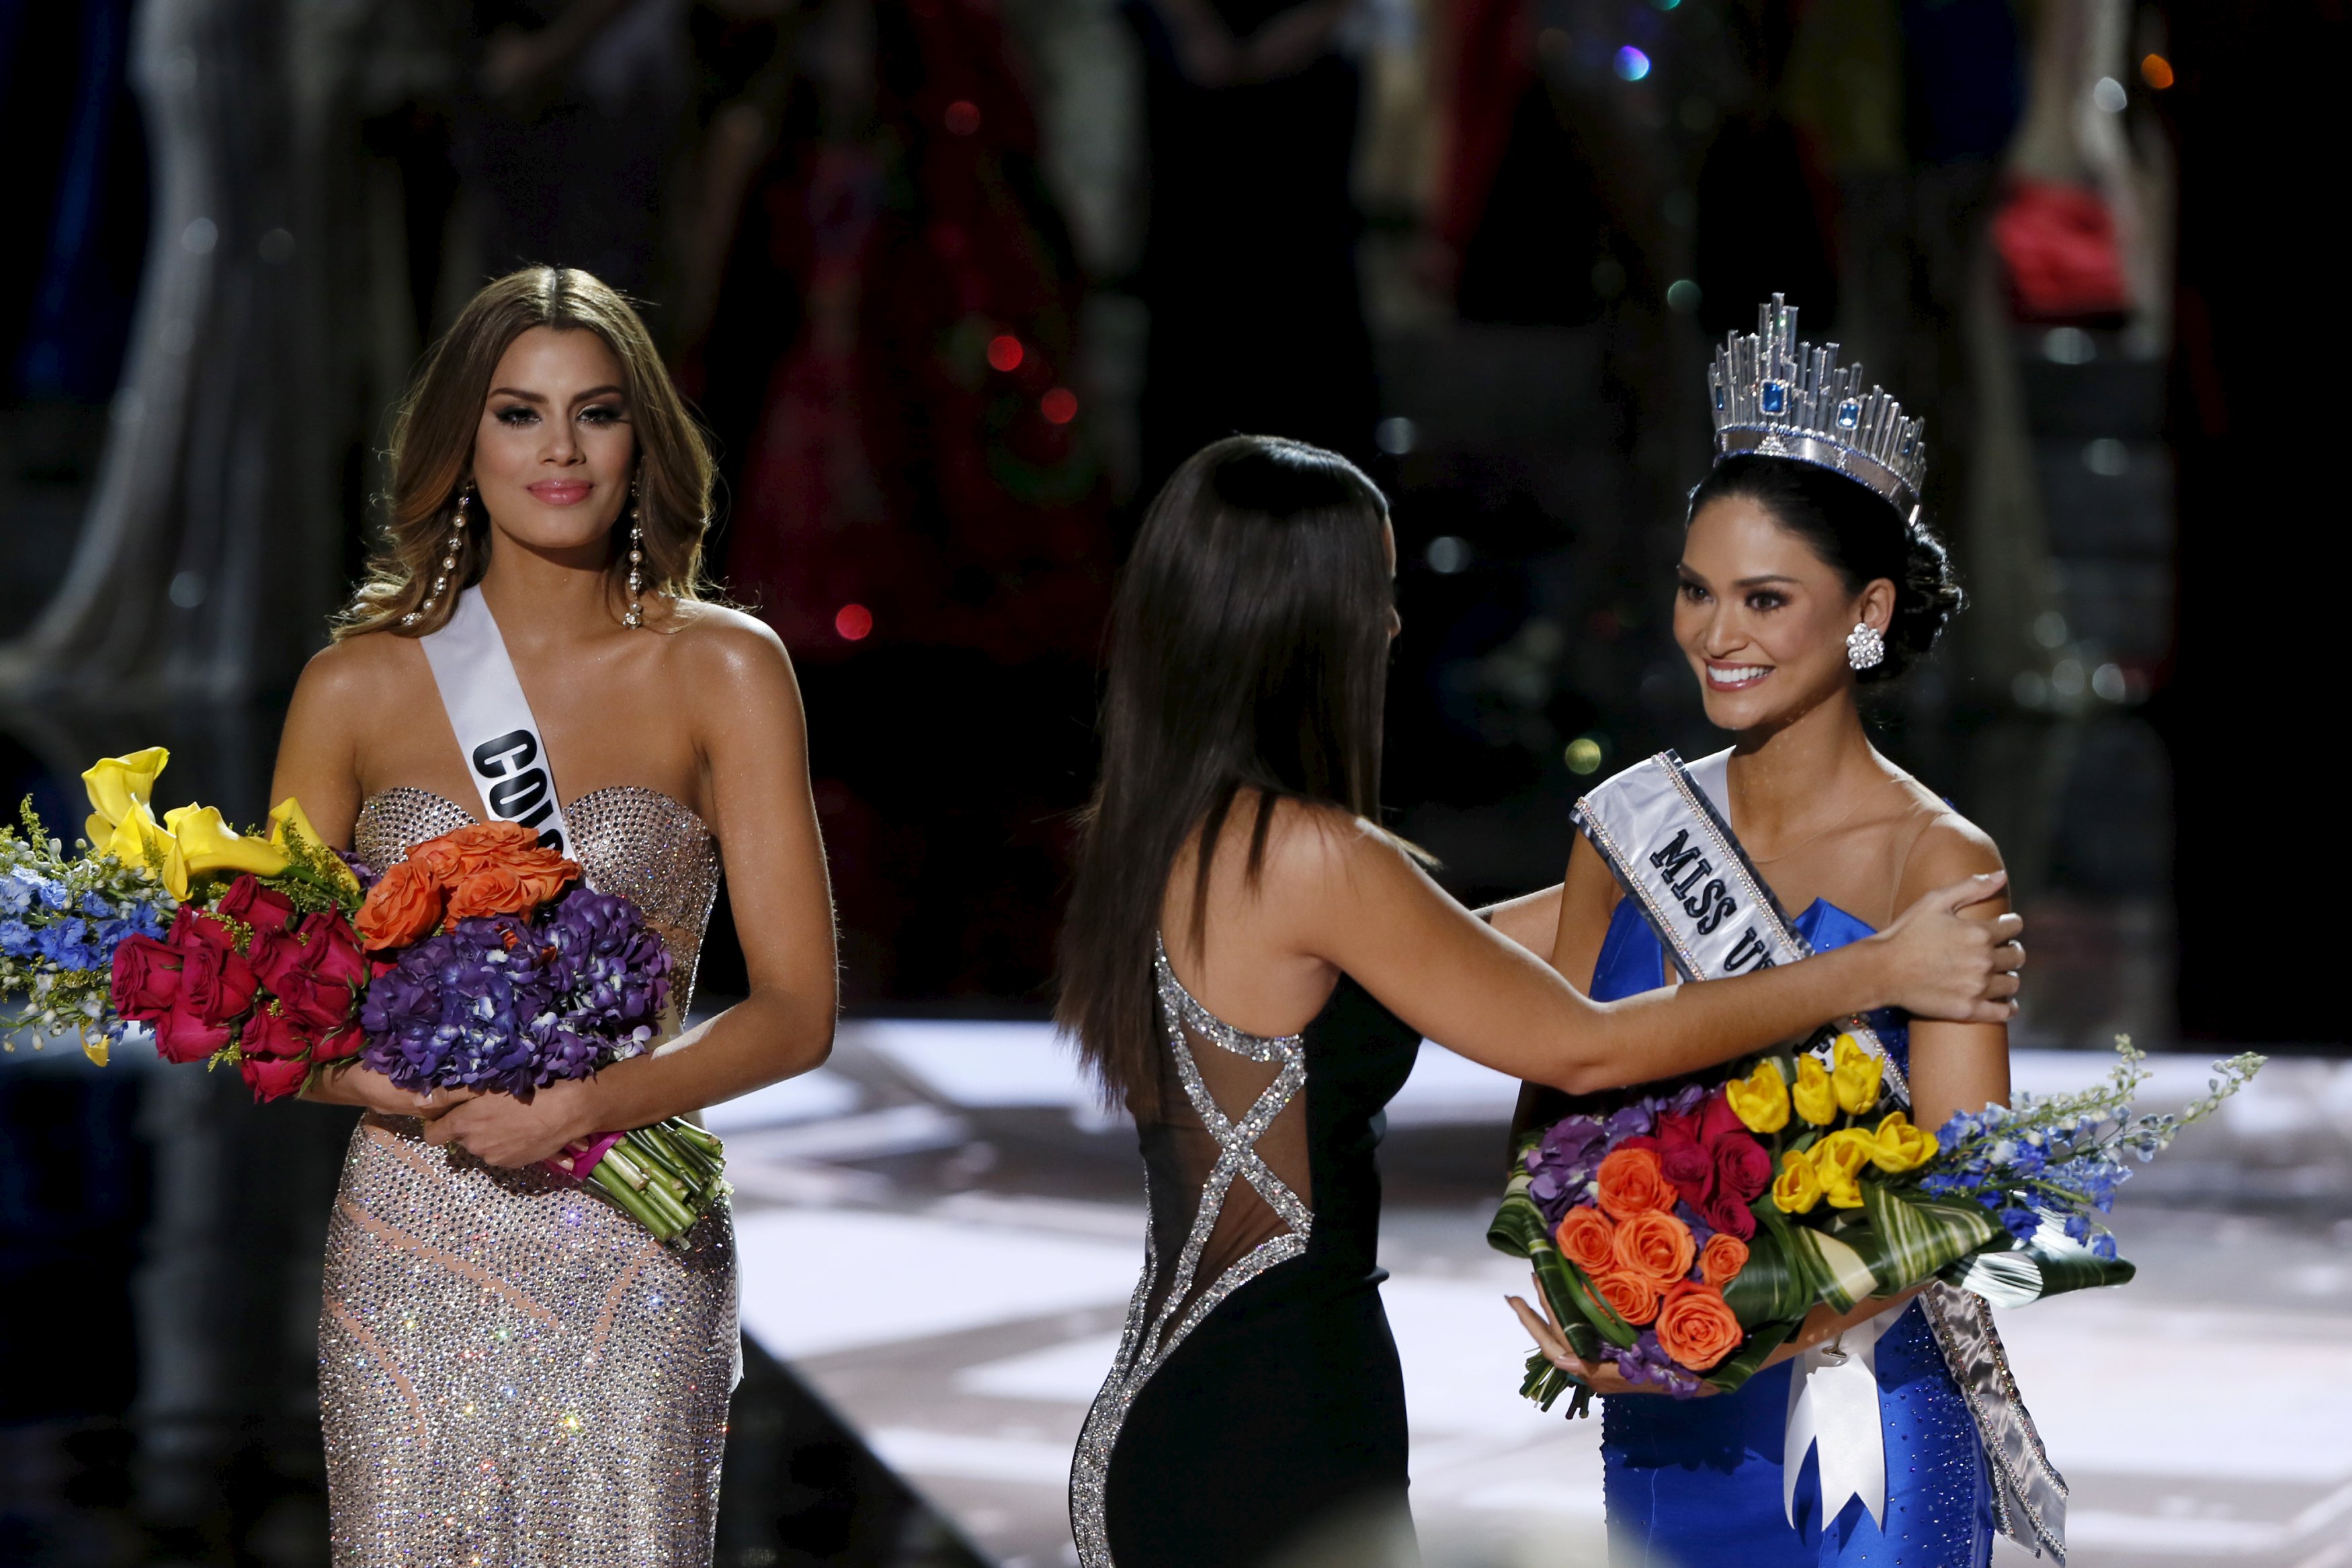 Phút trao vương miện cho người đẹp Philippines Pia Alonzo Wurtzbach - Ảnh: Reuters
